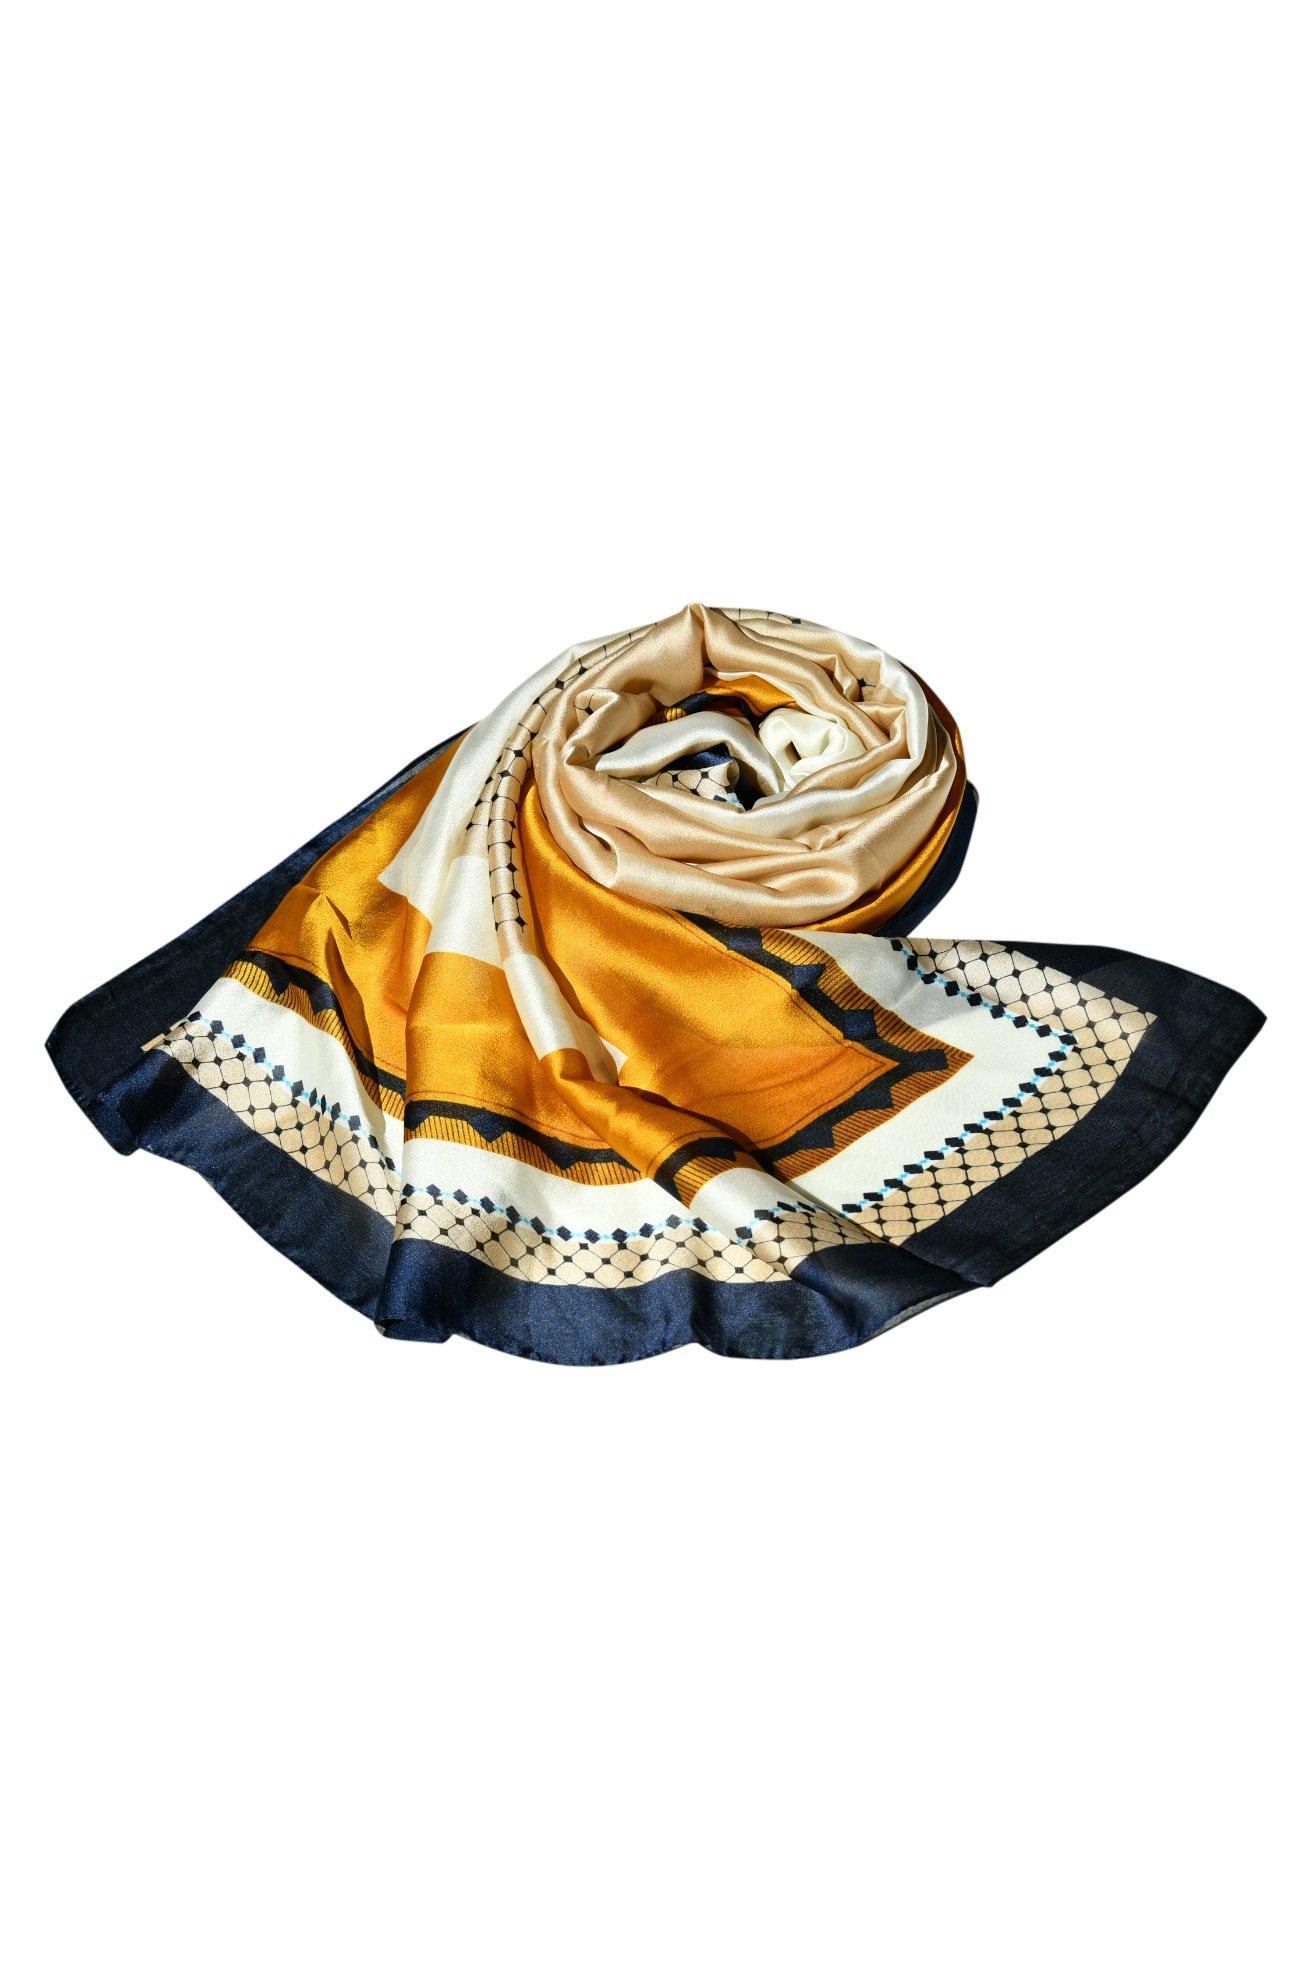 Высококачественная шаль, модельерский шелковый шарф с принтом для женщин, стильный шелковый платок, вечеринка, элегантность для любого наряда Blue Chilli, мультиколор цена и фото